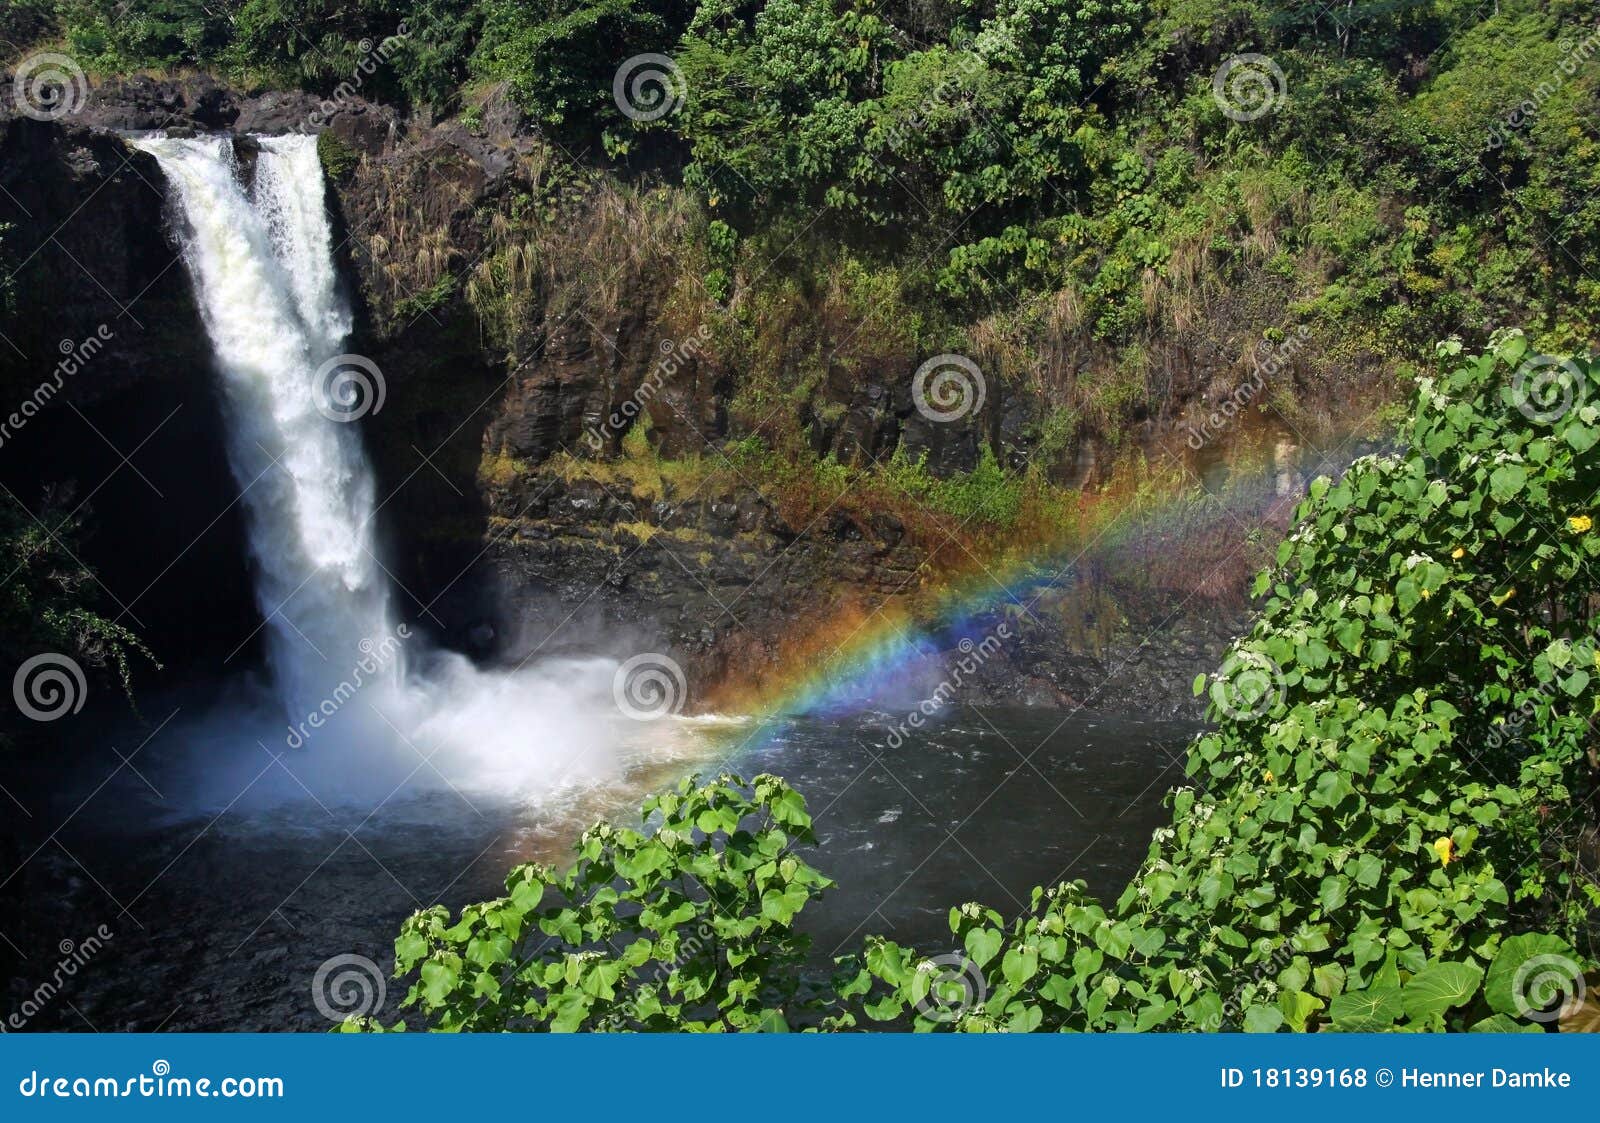 rainbow falls (big island, hawaii) 01